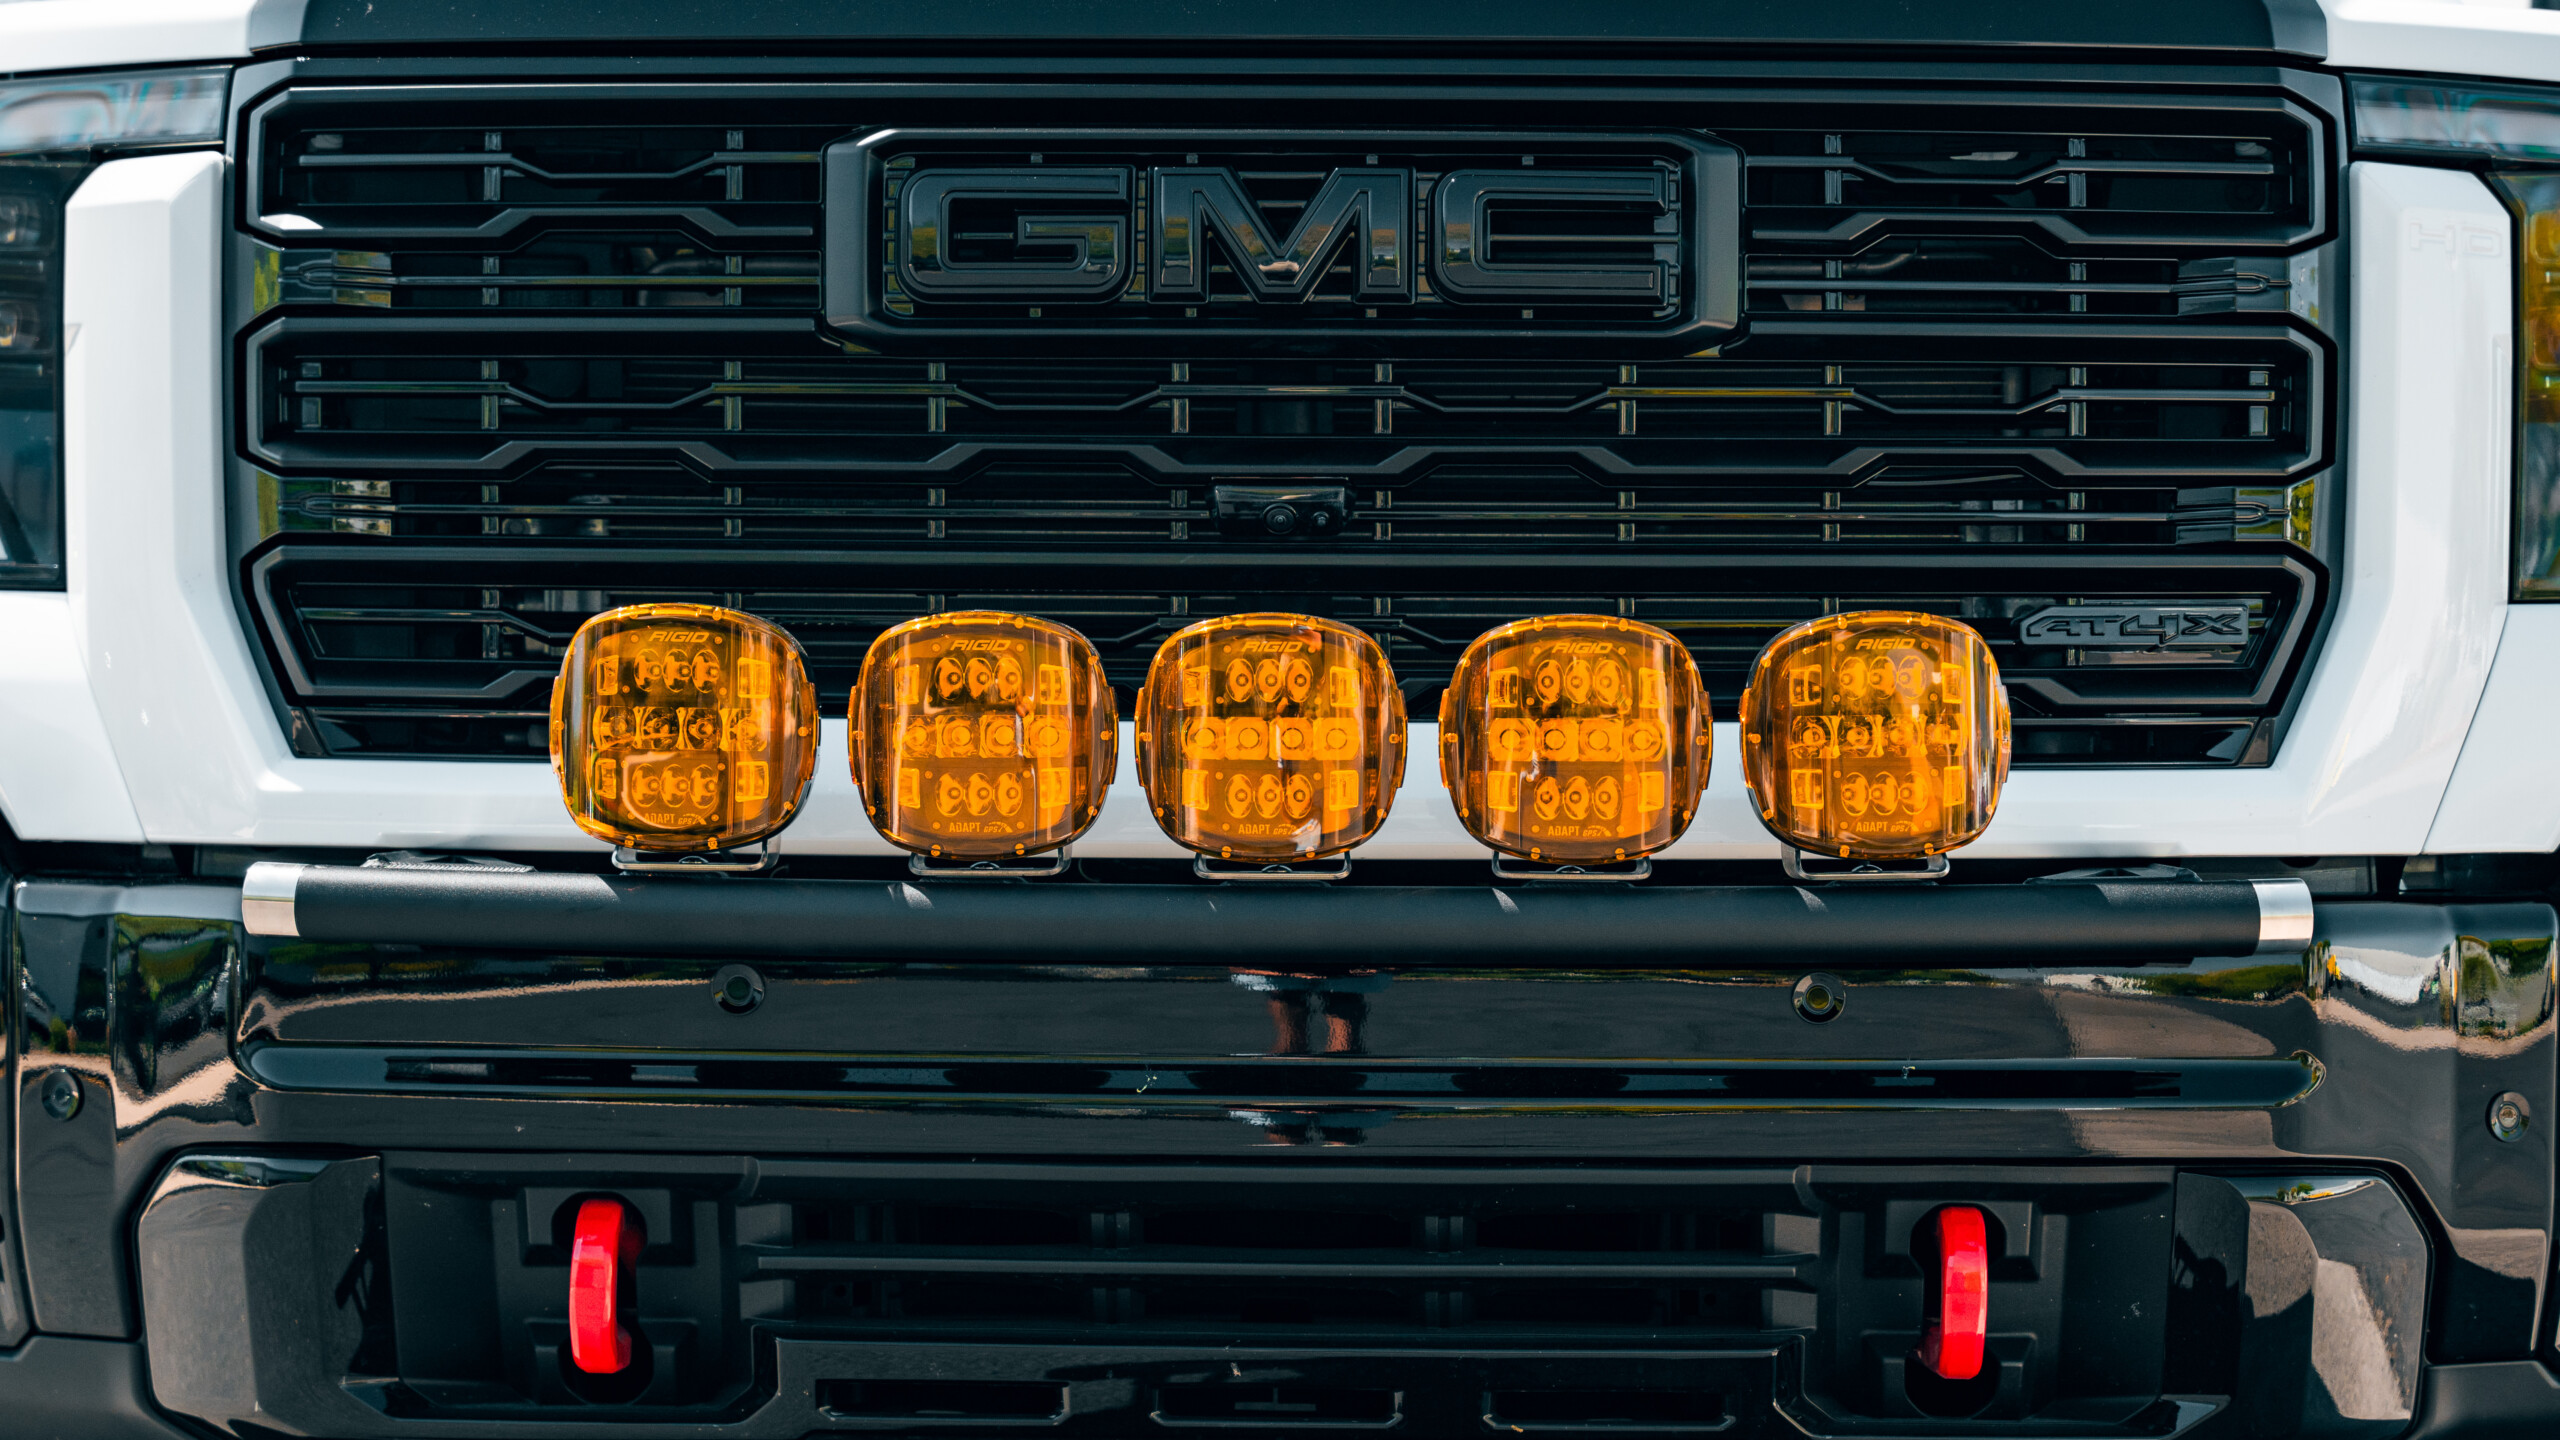 GMC 2500 AT4X Bumper Light Bar from Westcott Designs.